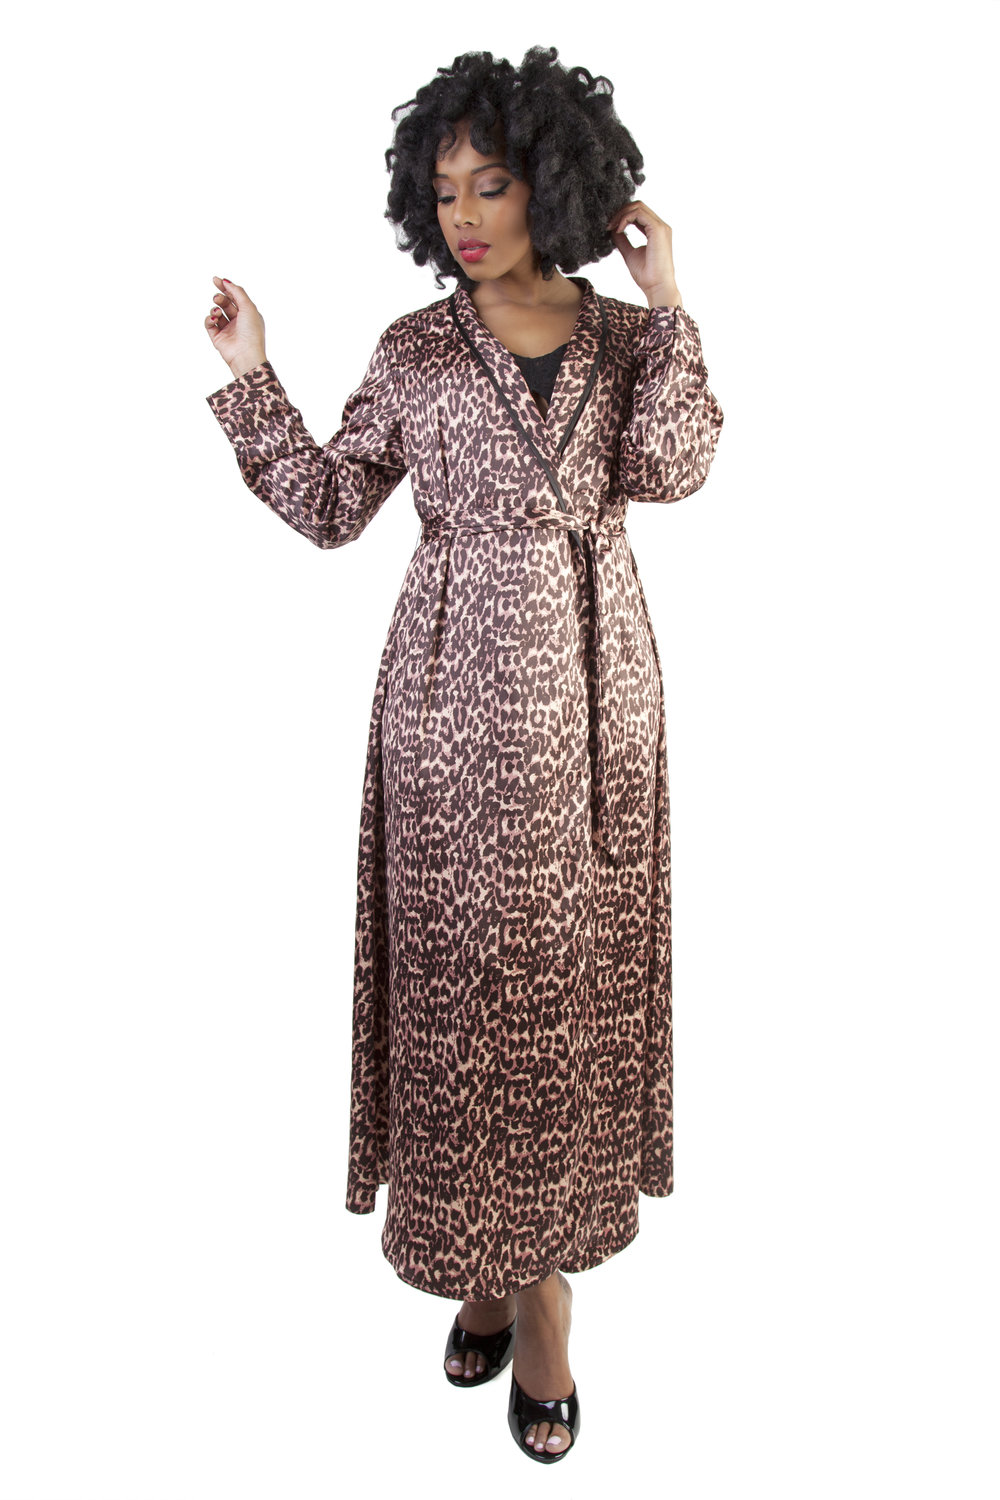 Bettie Page leopard robe.jpg